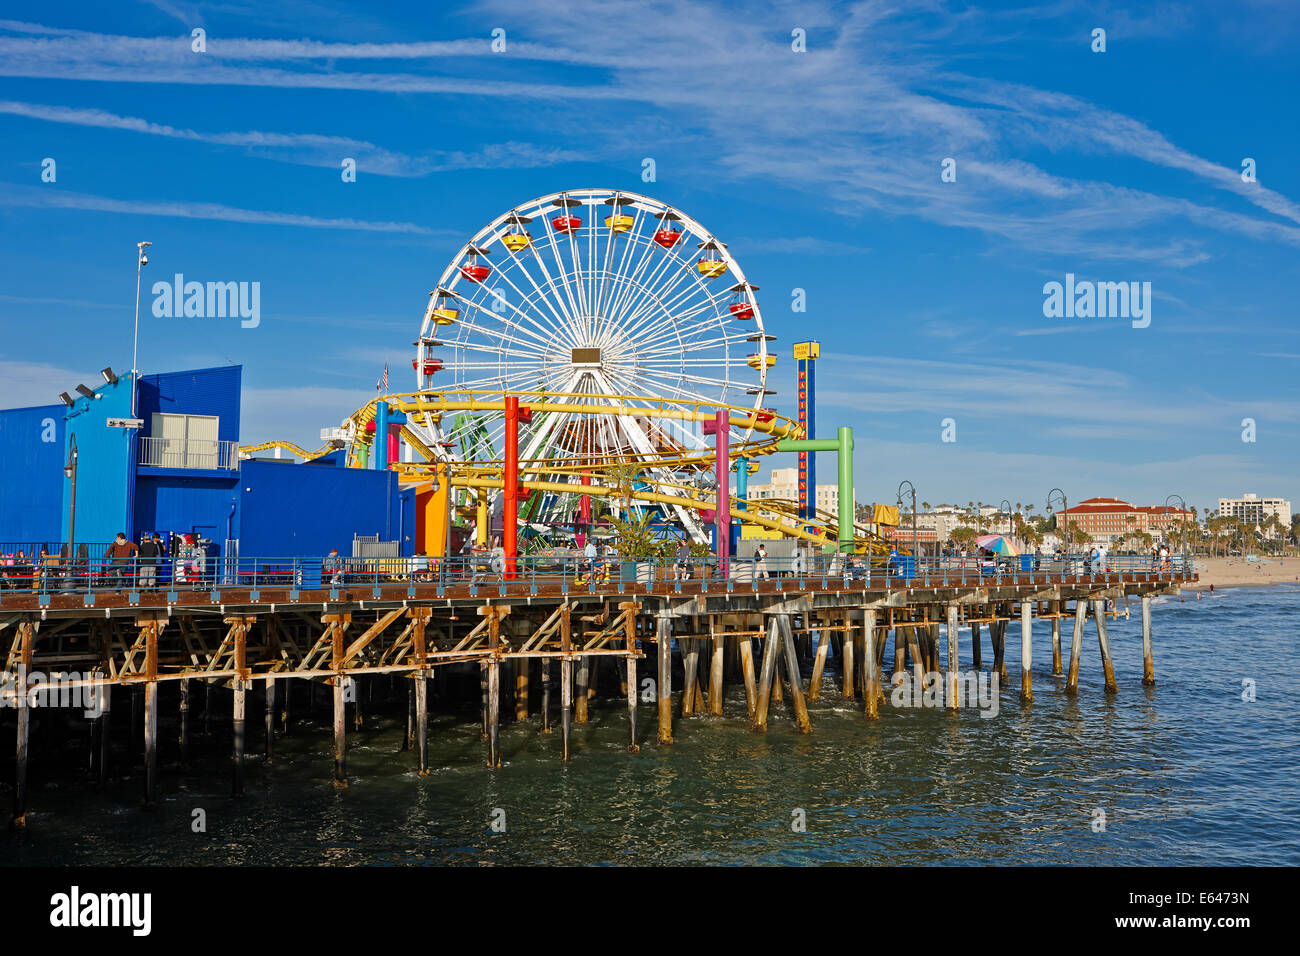 Vue de la grande roue et les montagnes russes dans le parc du Pacifique sur la jetée de Santa Monica. Santa Monica, Los Angeles, Californie, USA. Banque D'Images